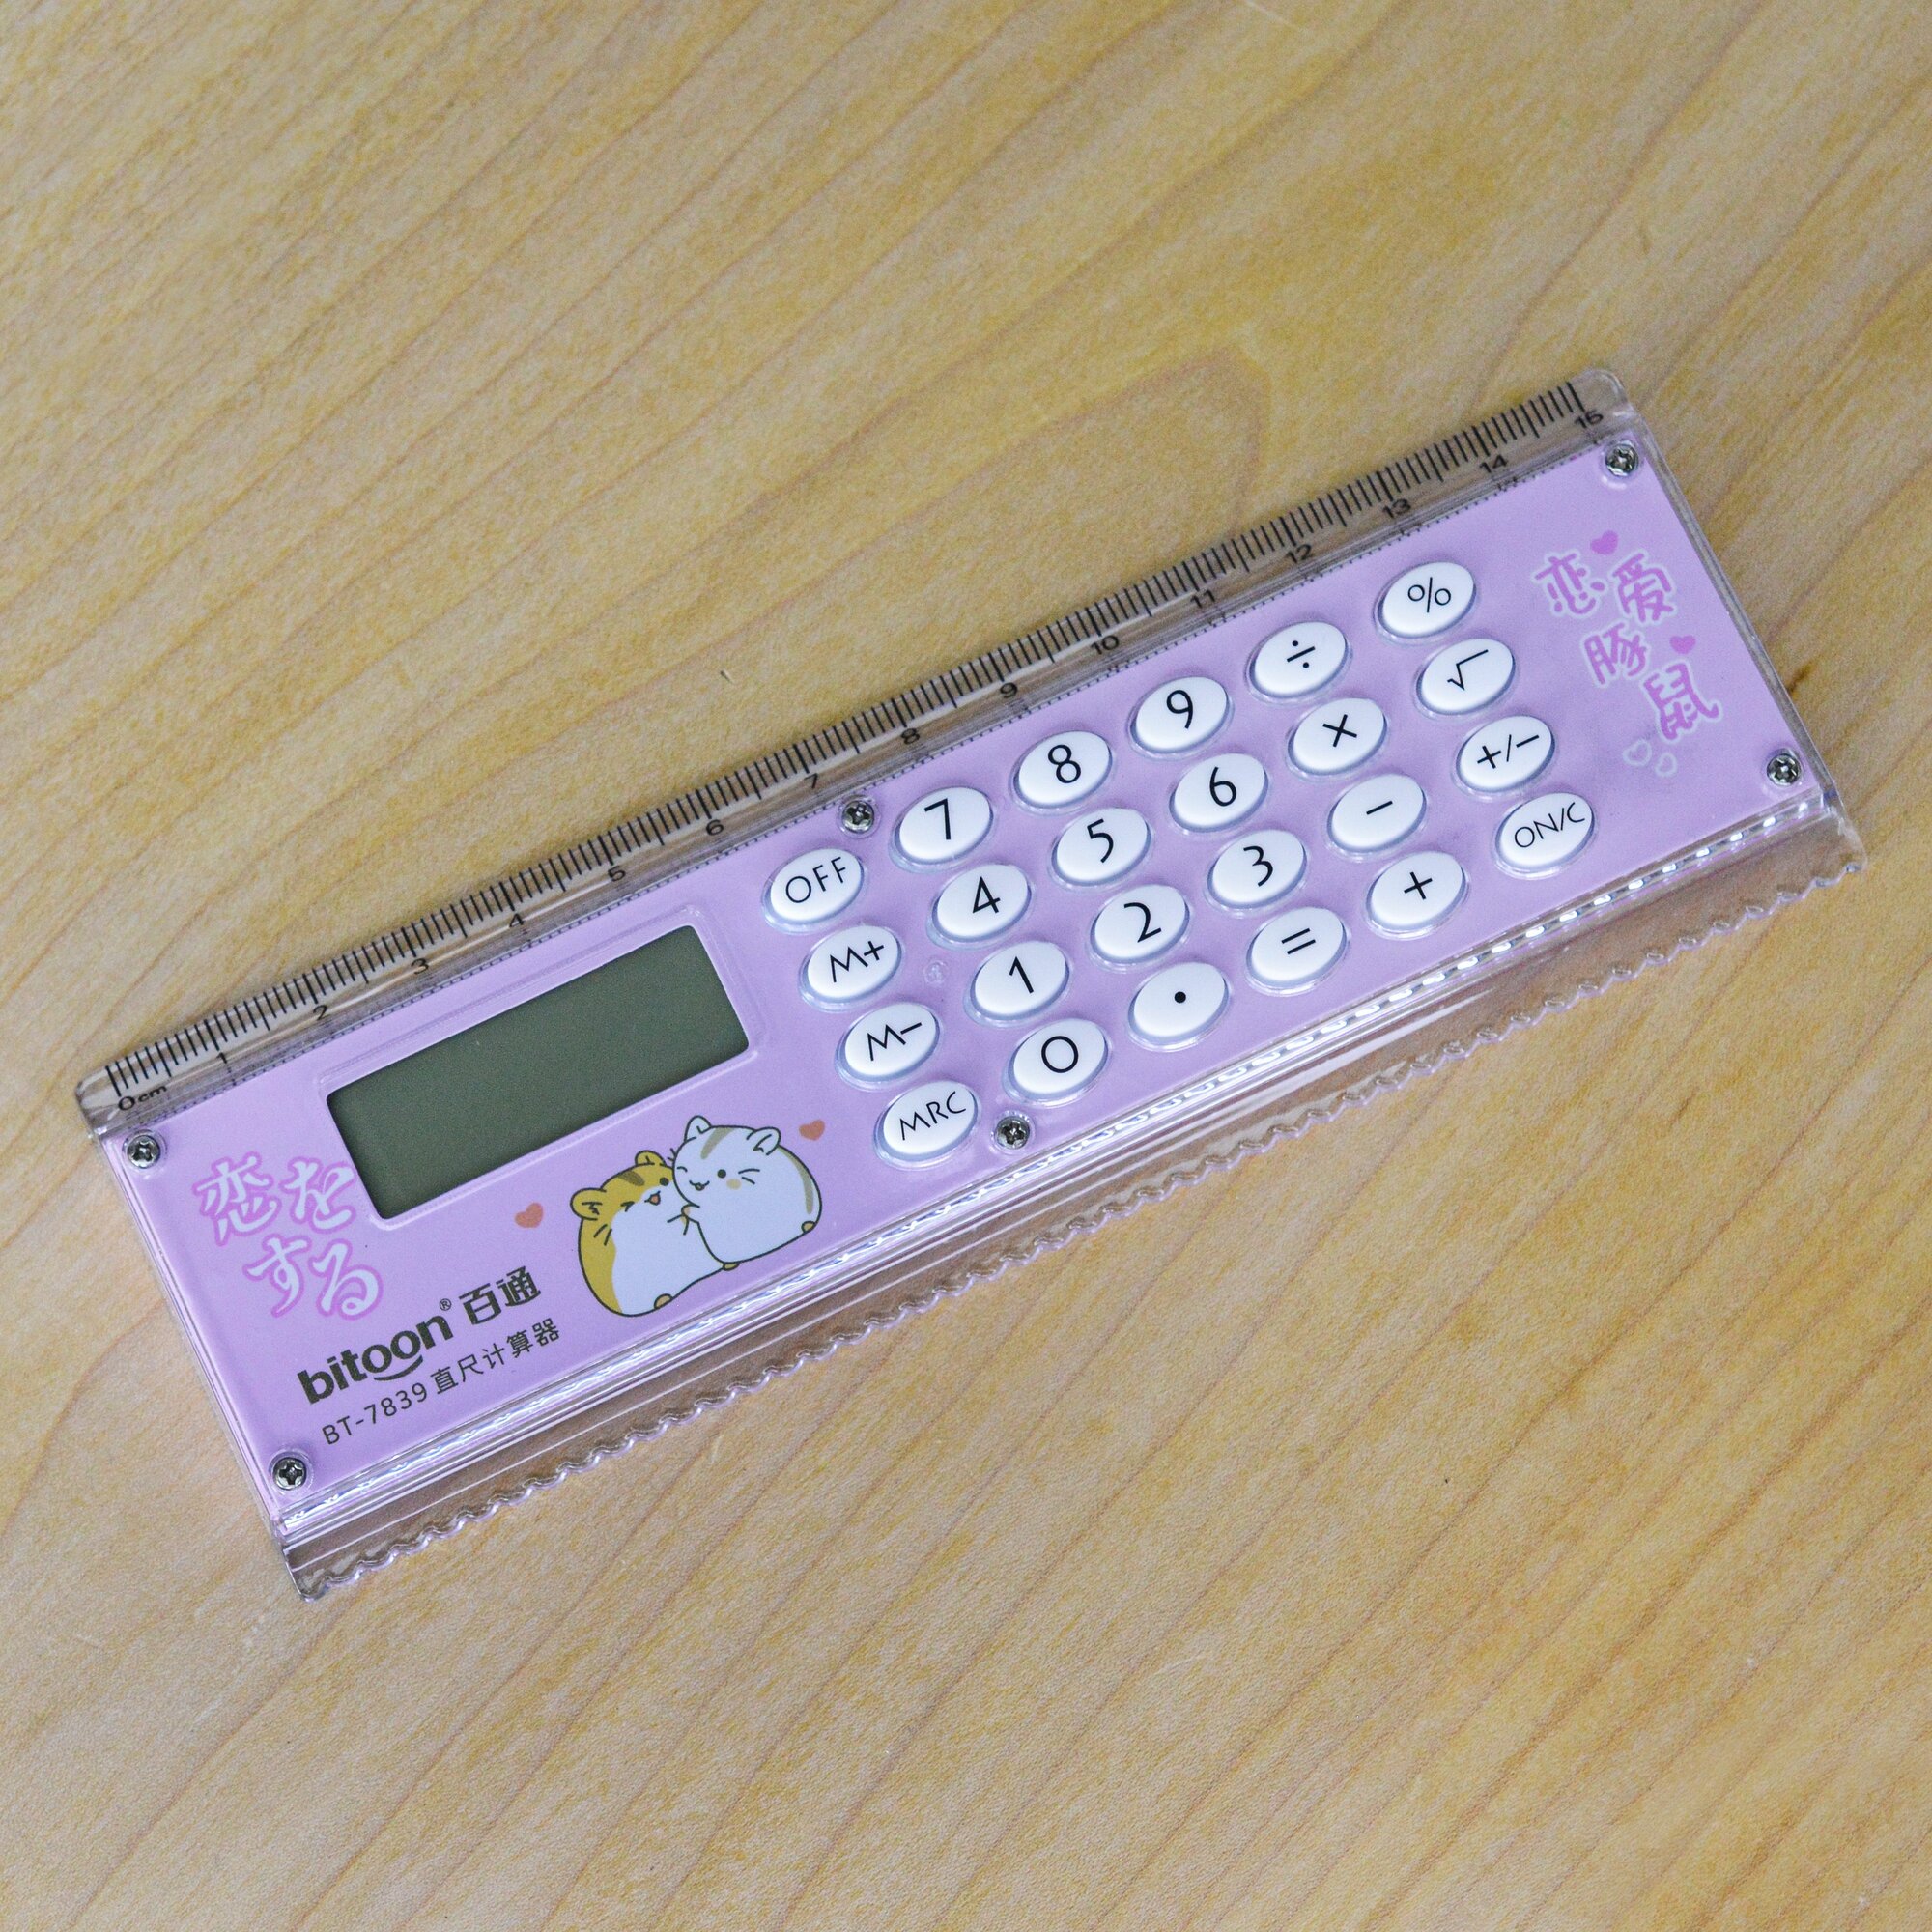 Калькулятор-линейка 8 разрядный / Калькулятор с линейкой для школы и офиса портативный маленький / Розовый